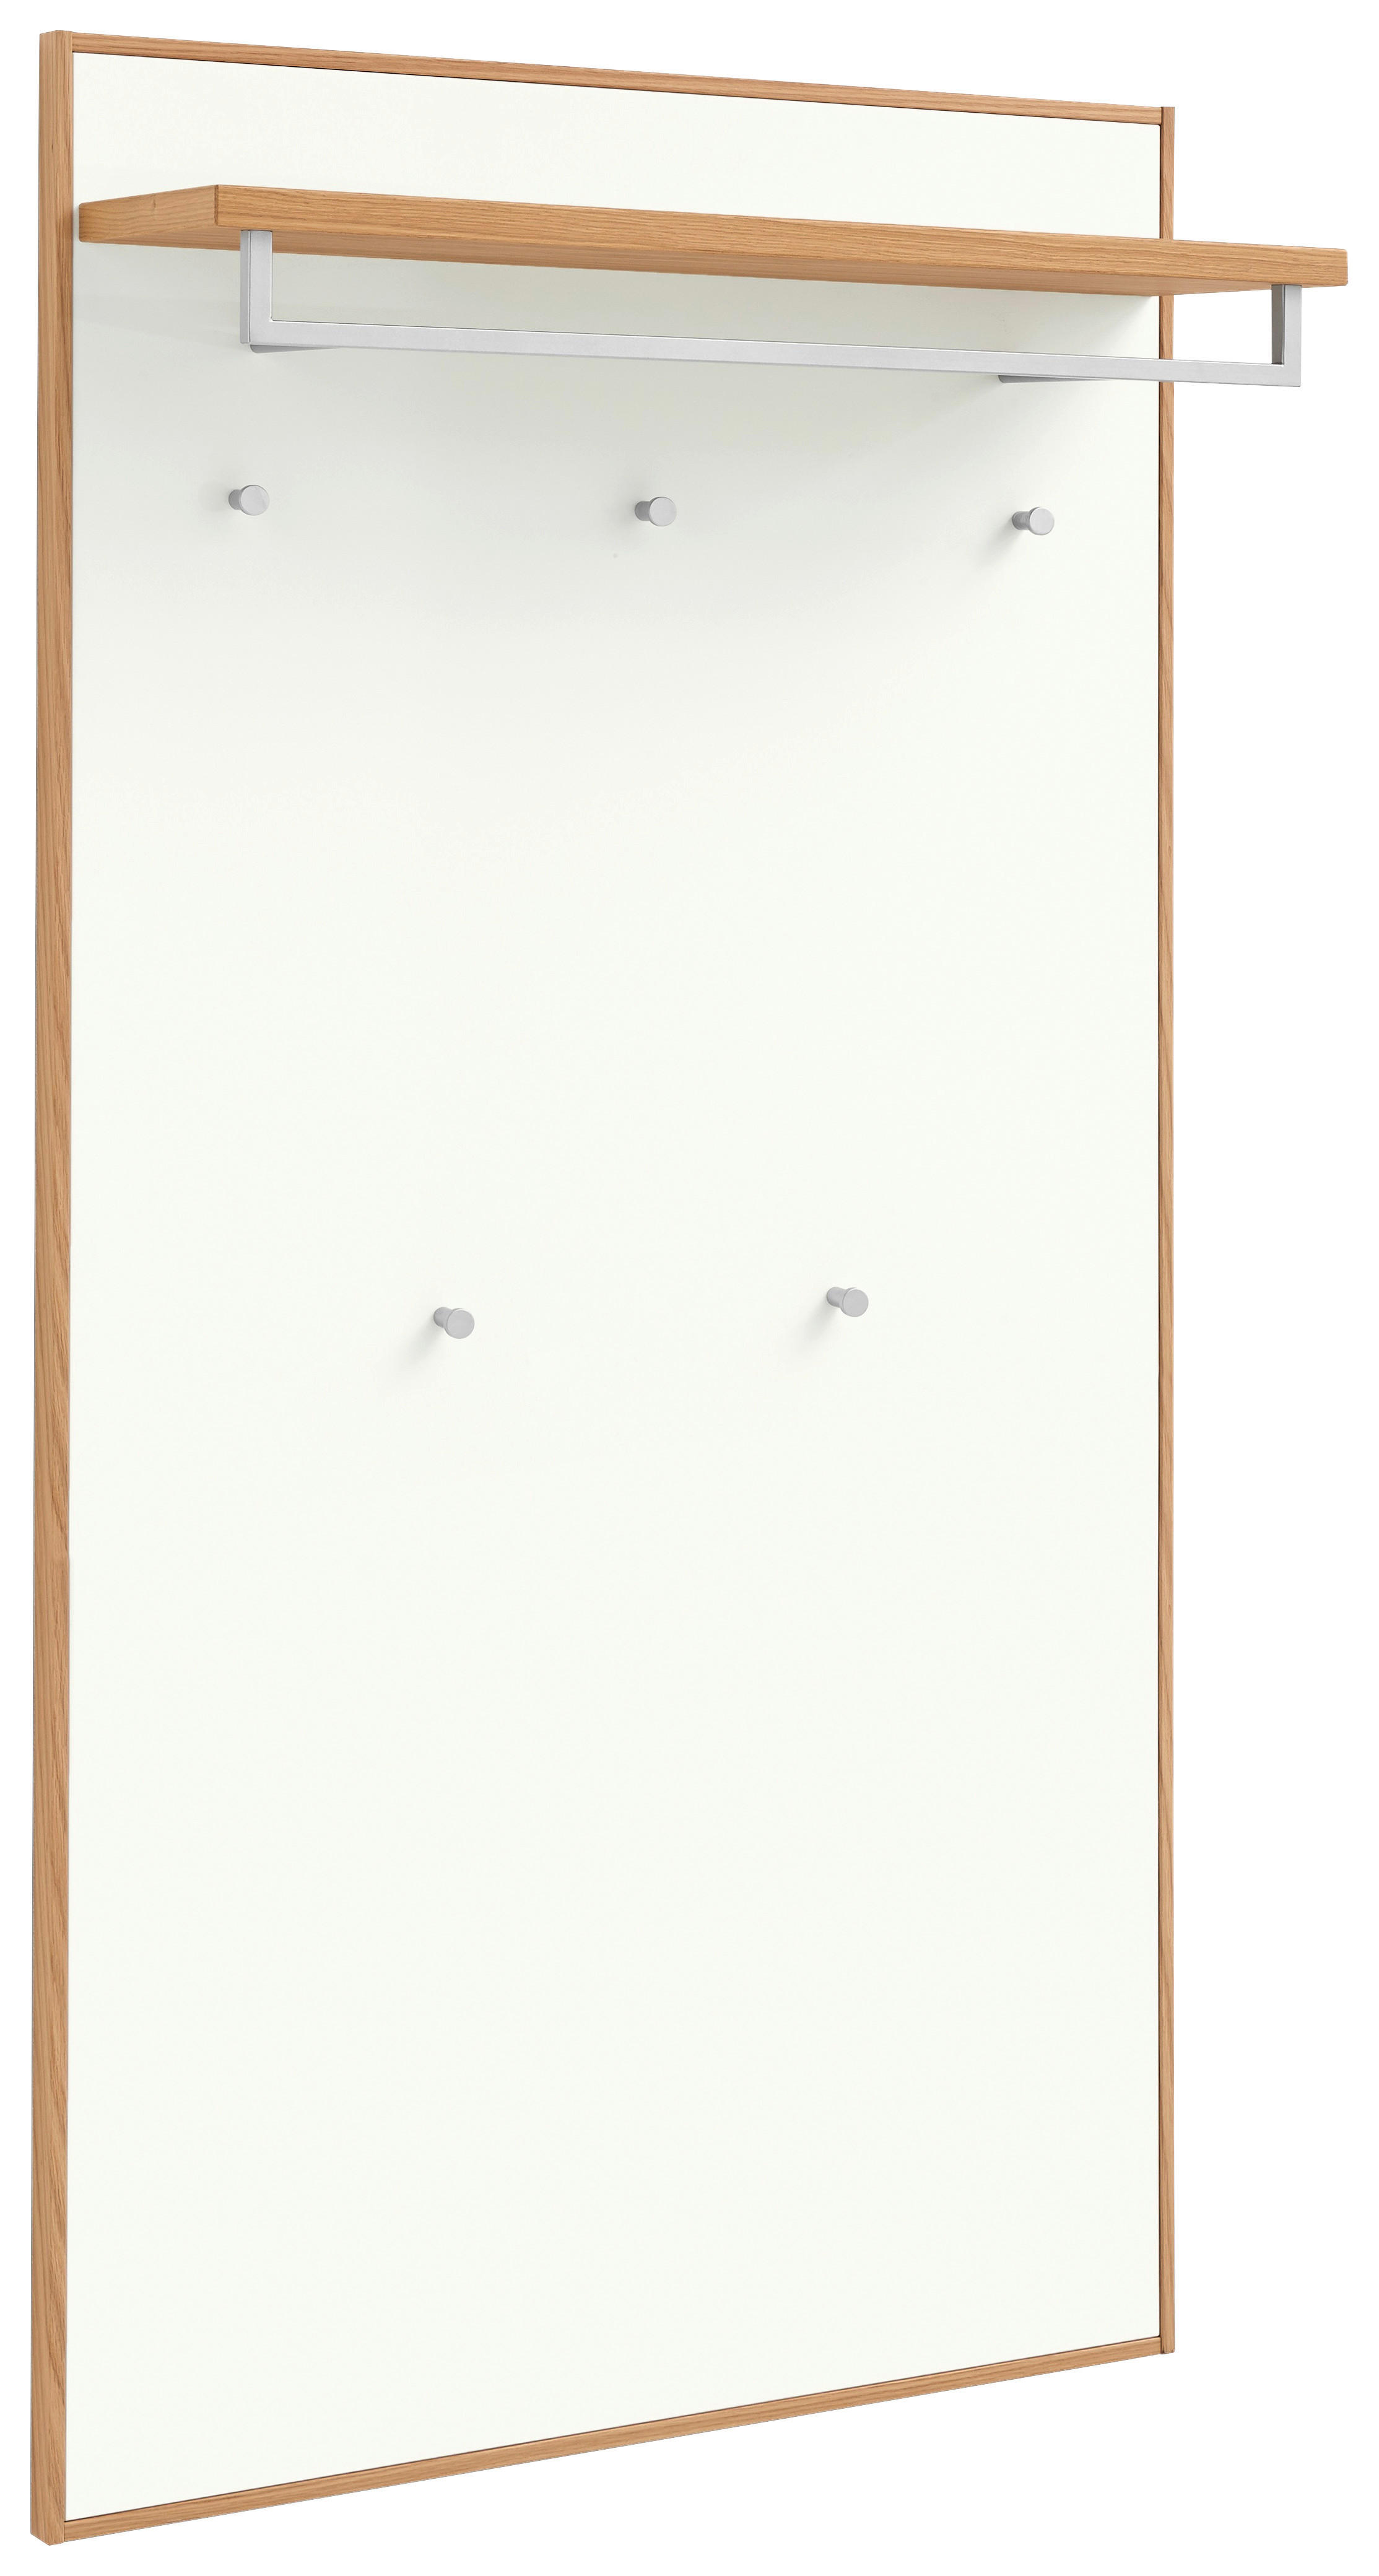 GARDEROBENPANEEL 83/183/29 cm  - Eiche Bianco/Weiß, Design, Holz (83/183/29cm)